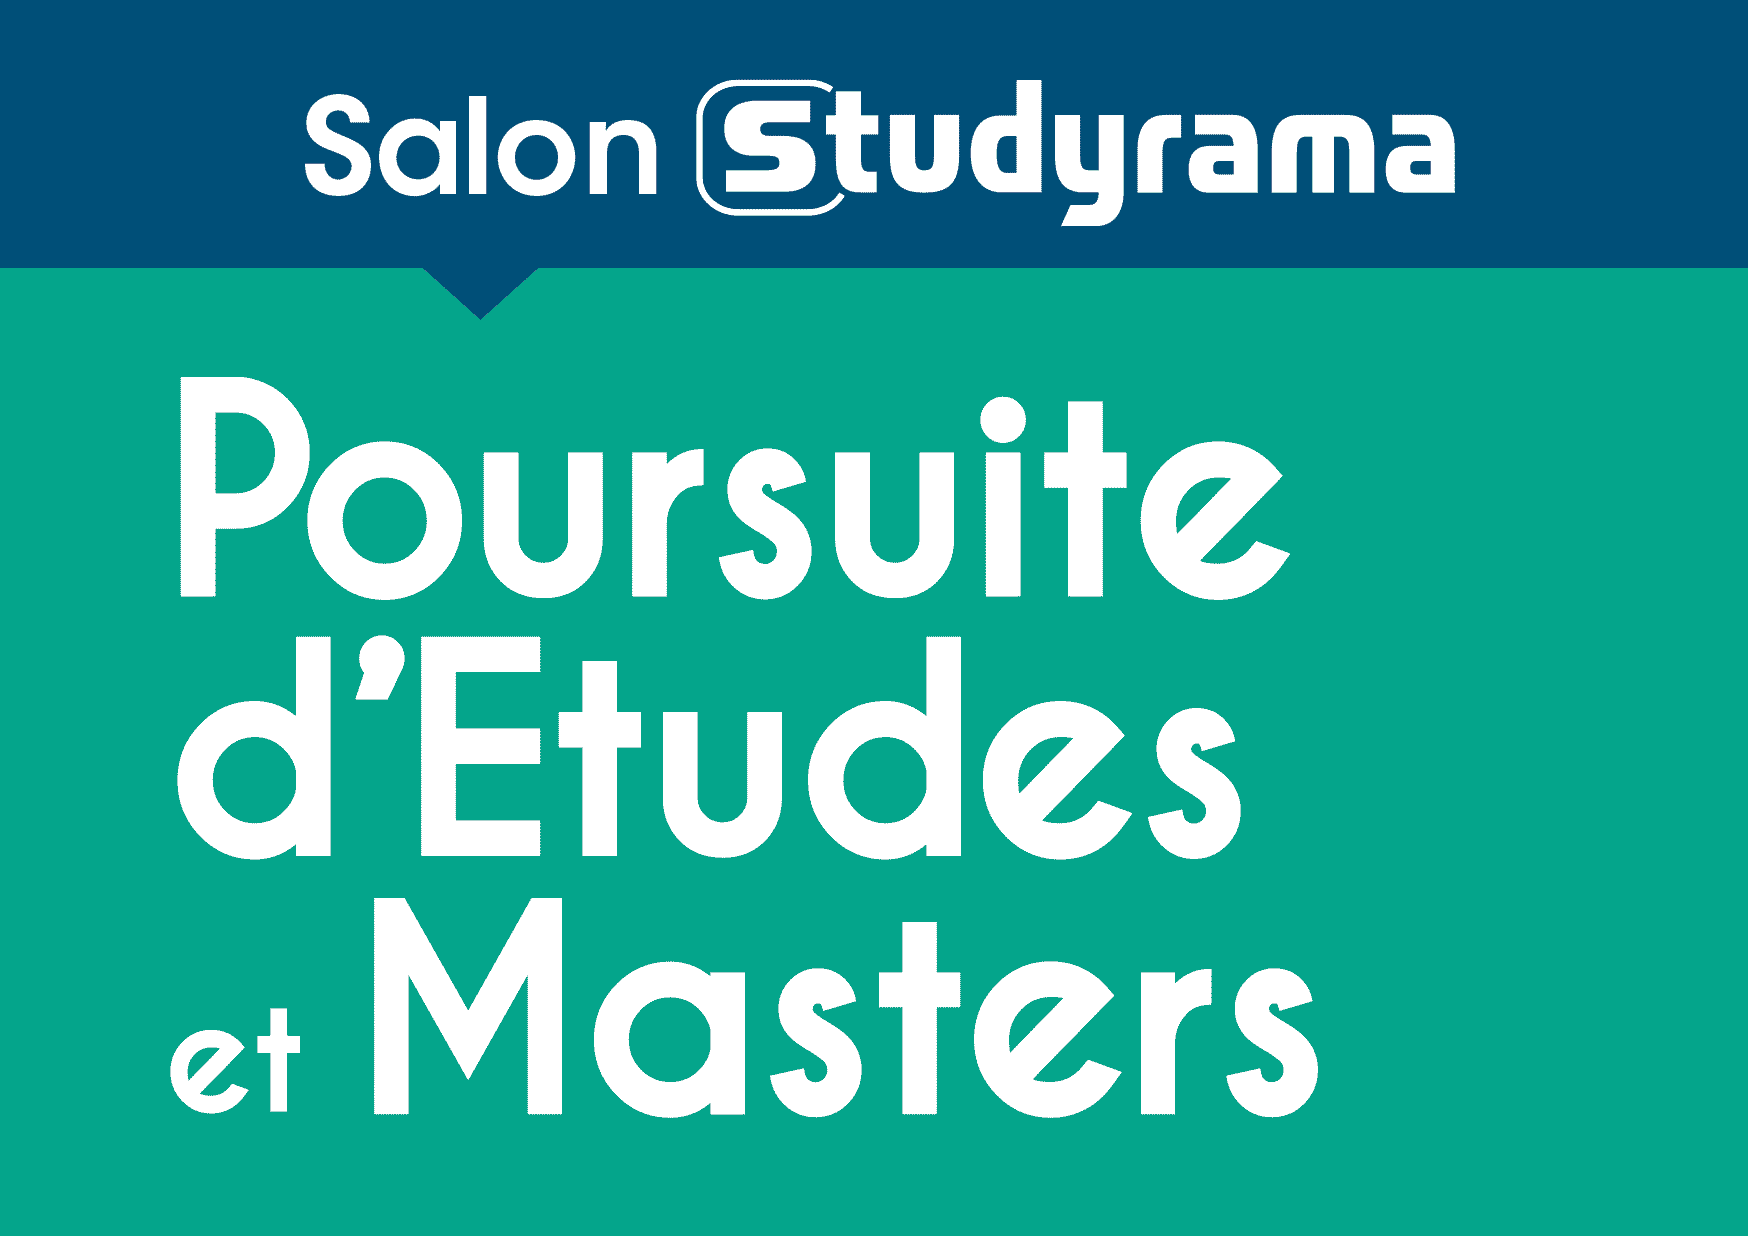 Salon Studyrama de la poursuite d'études et Masters - Samedi 3 février 2018